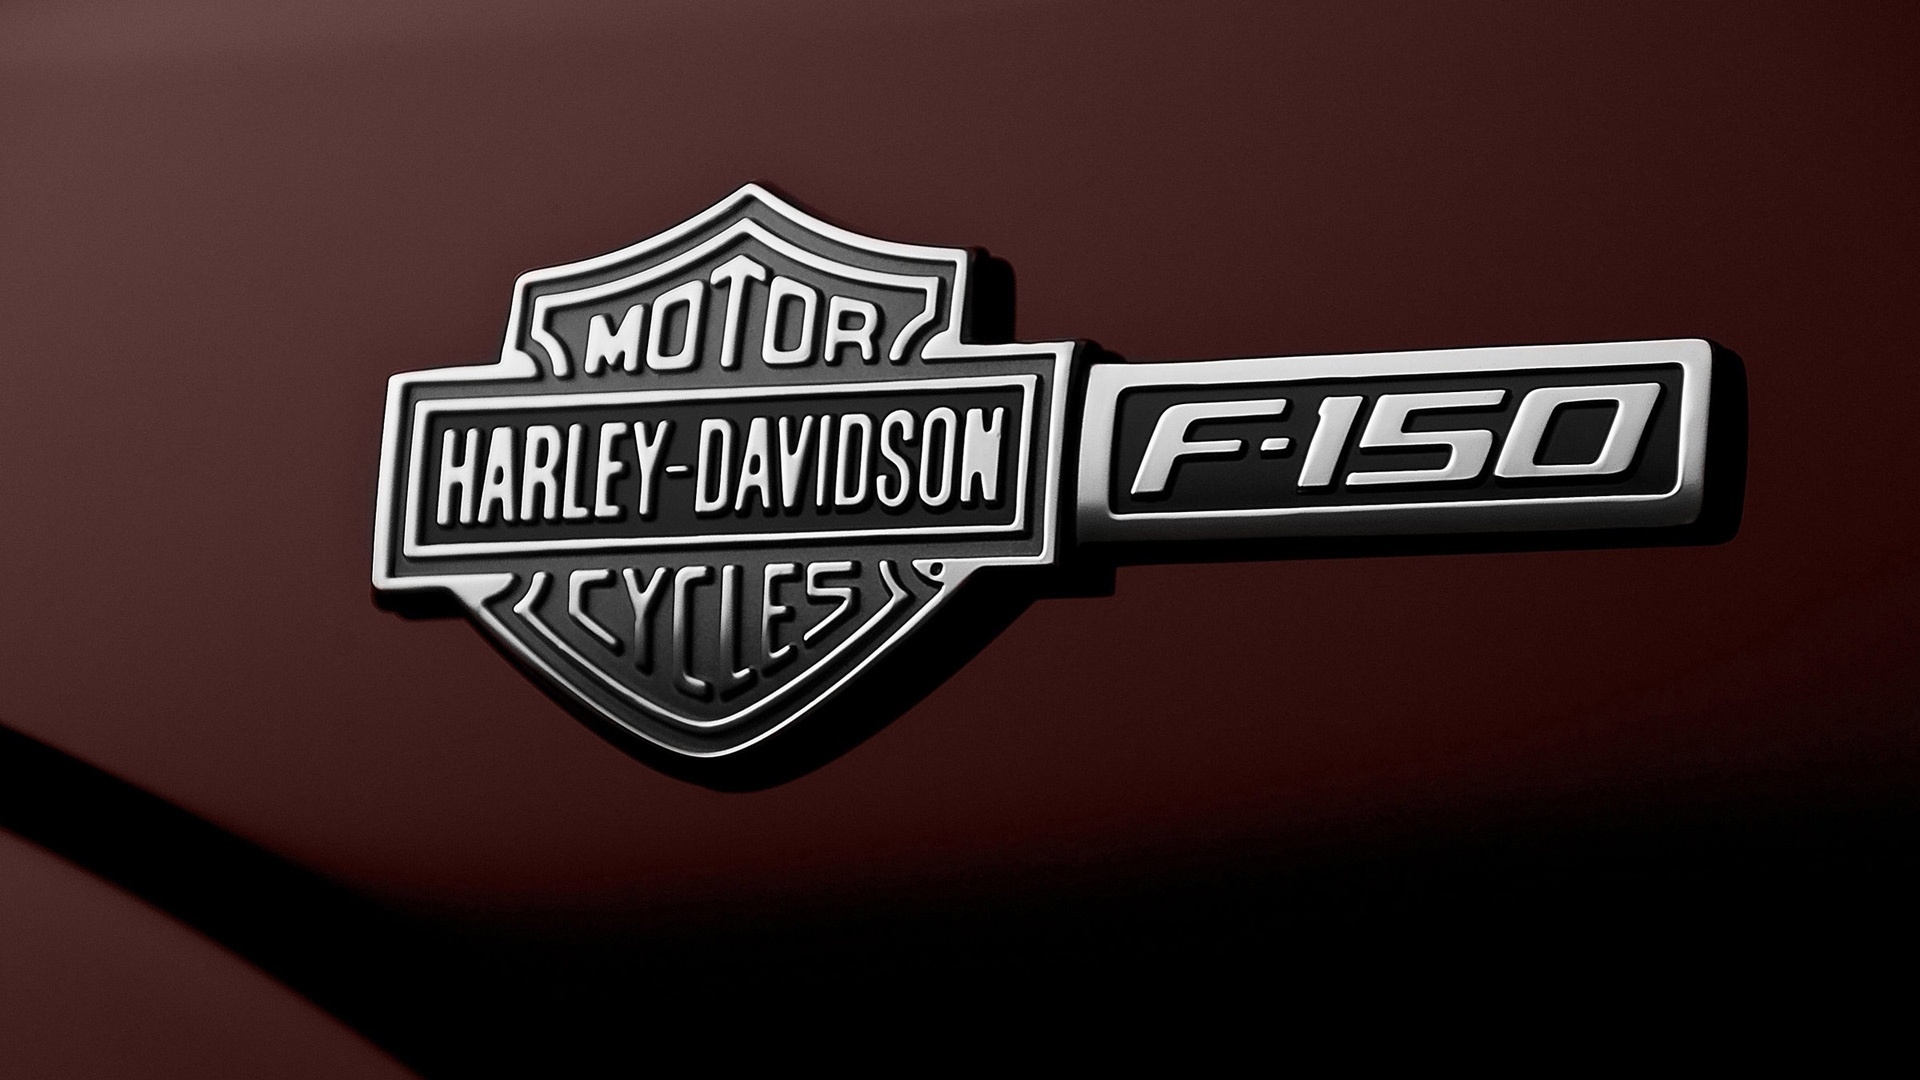 Ford F-150 Harley-Davidson Emblem for 1920 x 1080 HDTV 1080p resolution